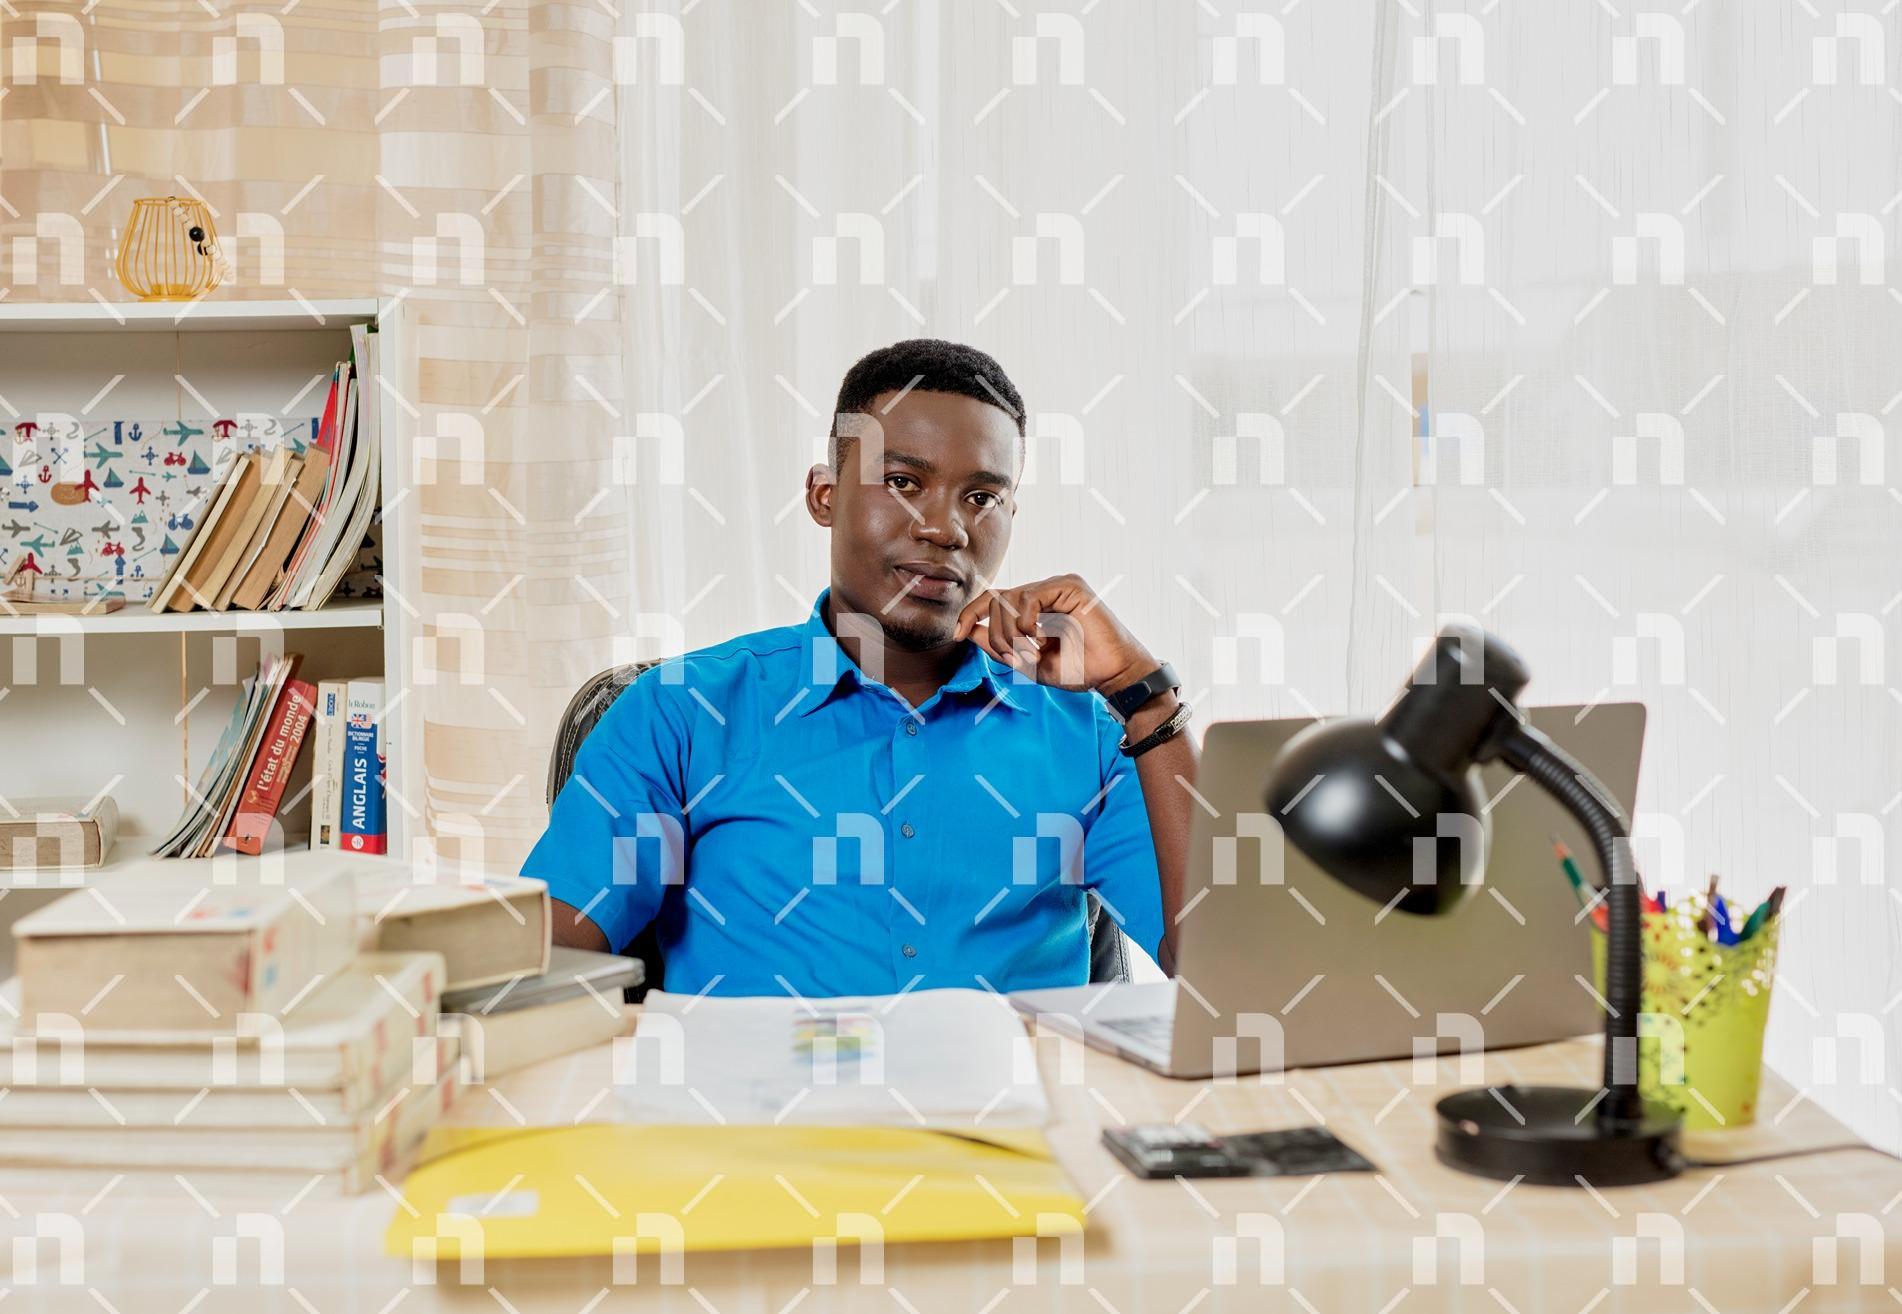 homme-de-teint-noir-assis-dans-un-bureau-en-face-de-son-ordinateur-avec-une-table-pleine-de-livres-et-de-cahiers